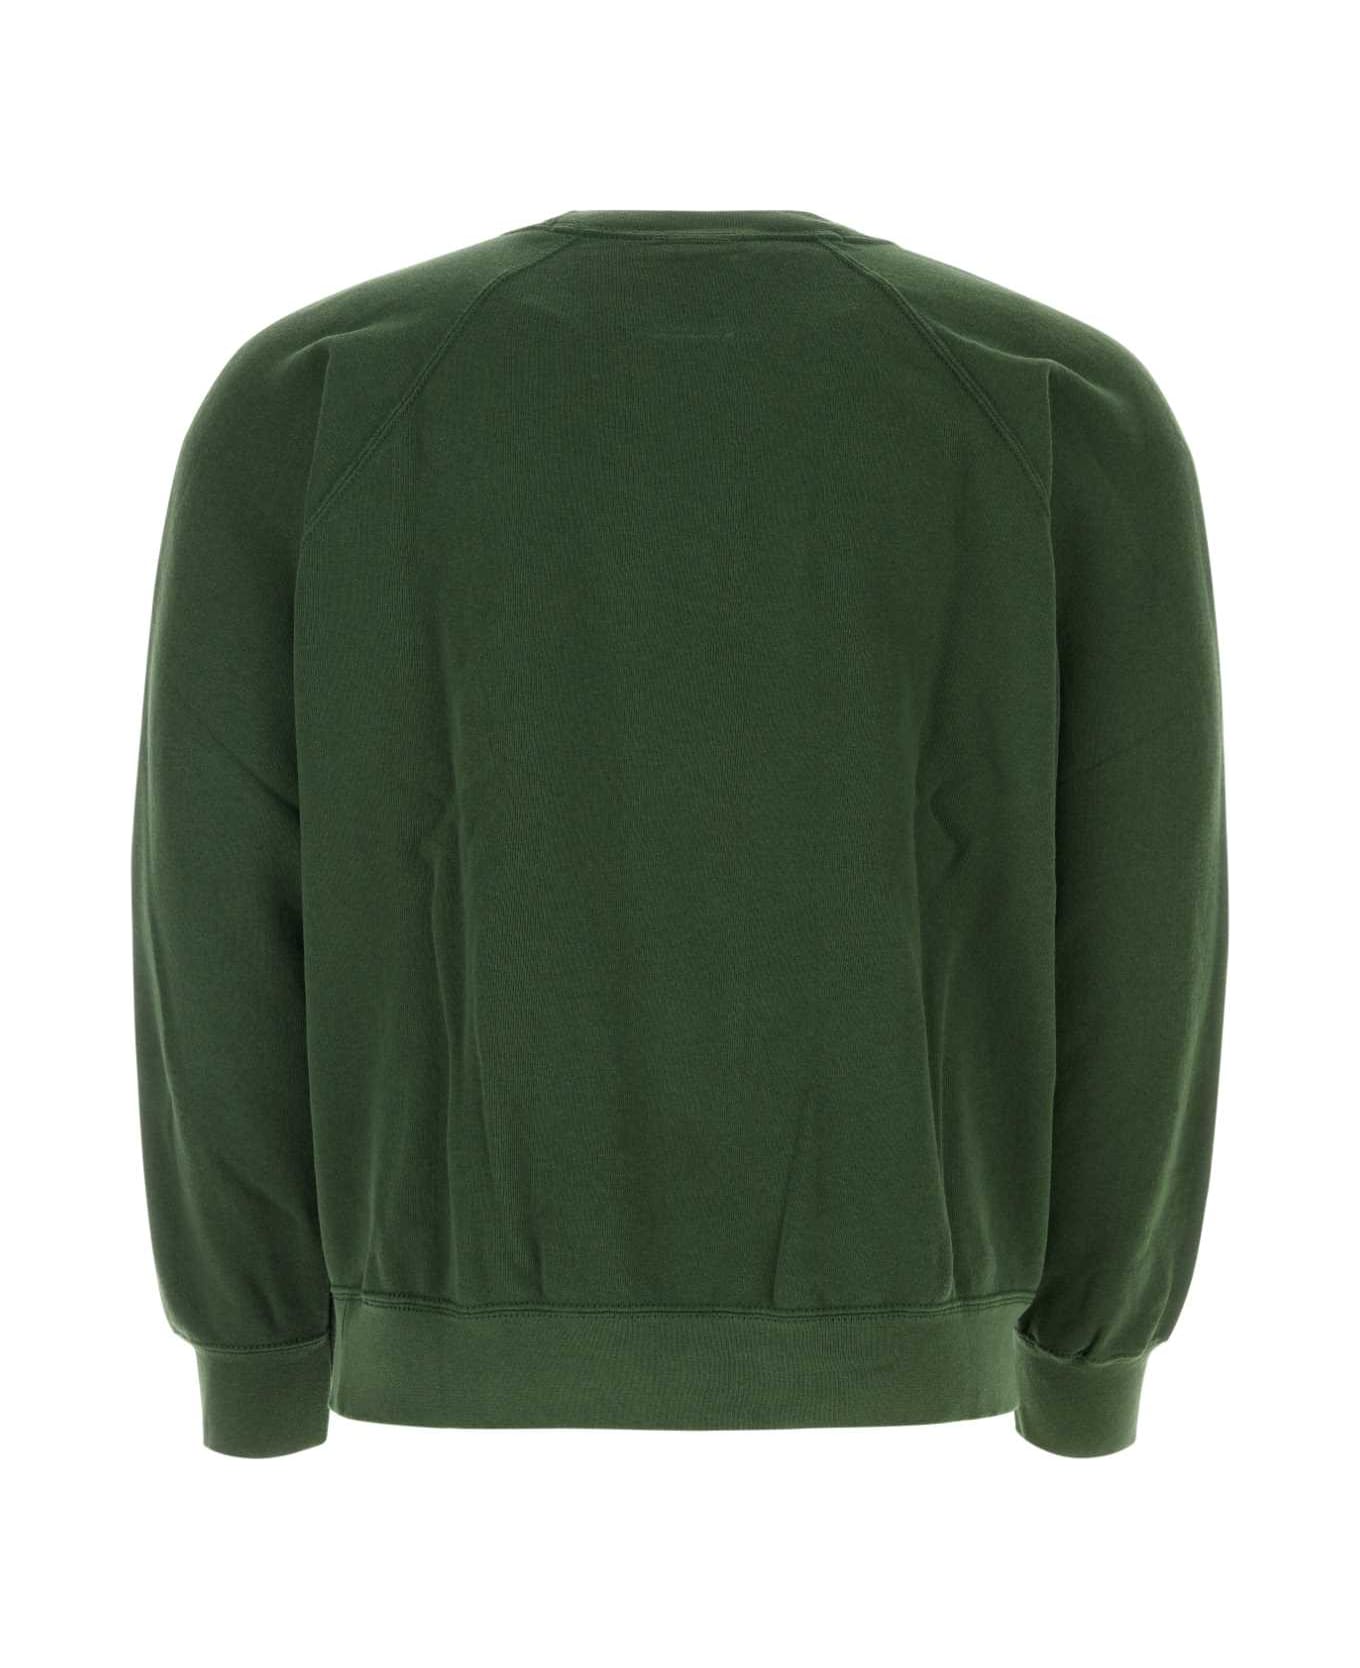 Wild Donkey Buttale Green Cotton Blend Sweatshirt - WD075